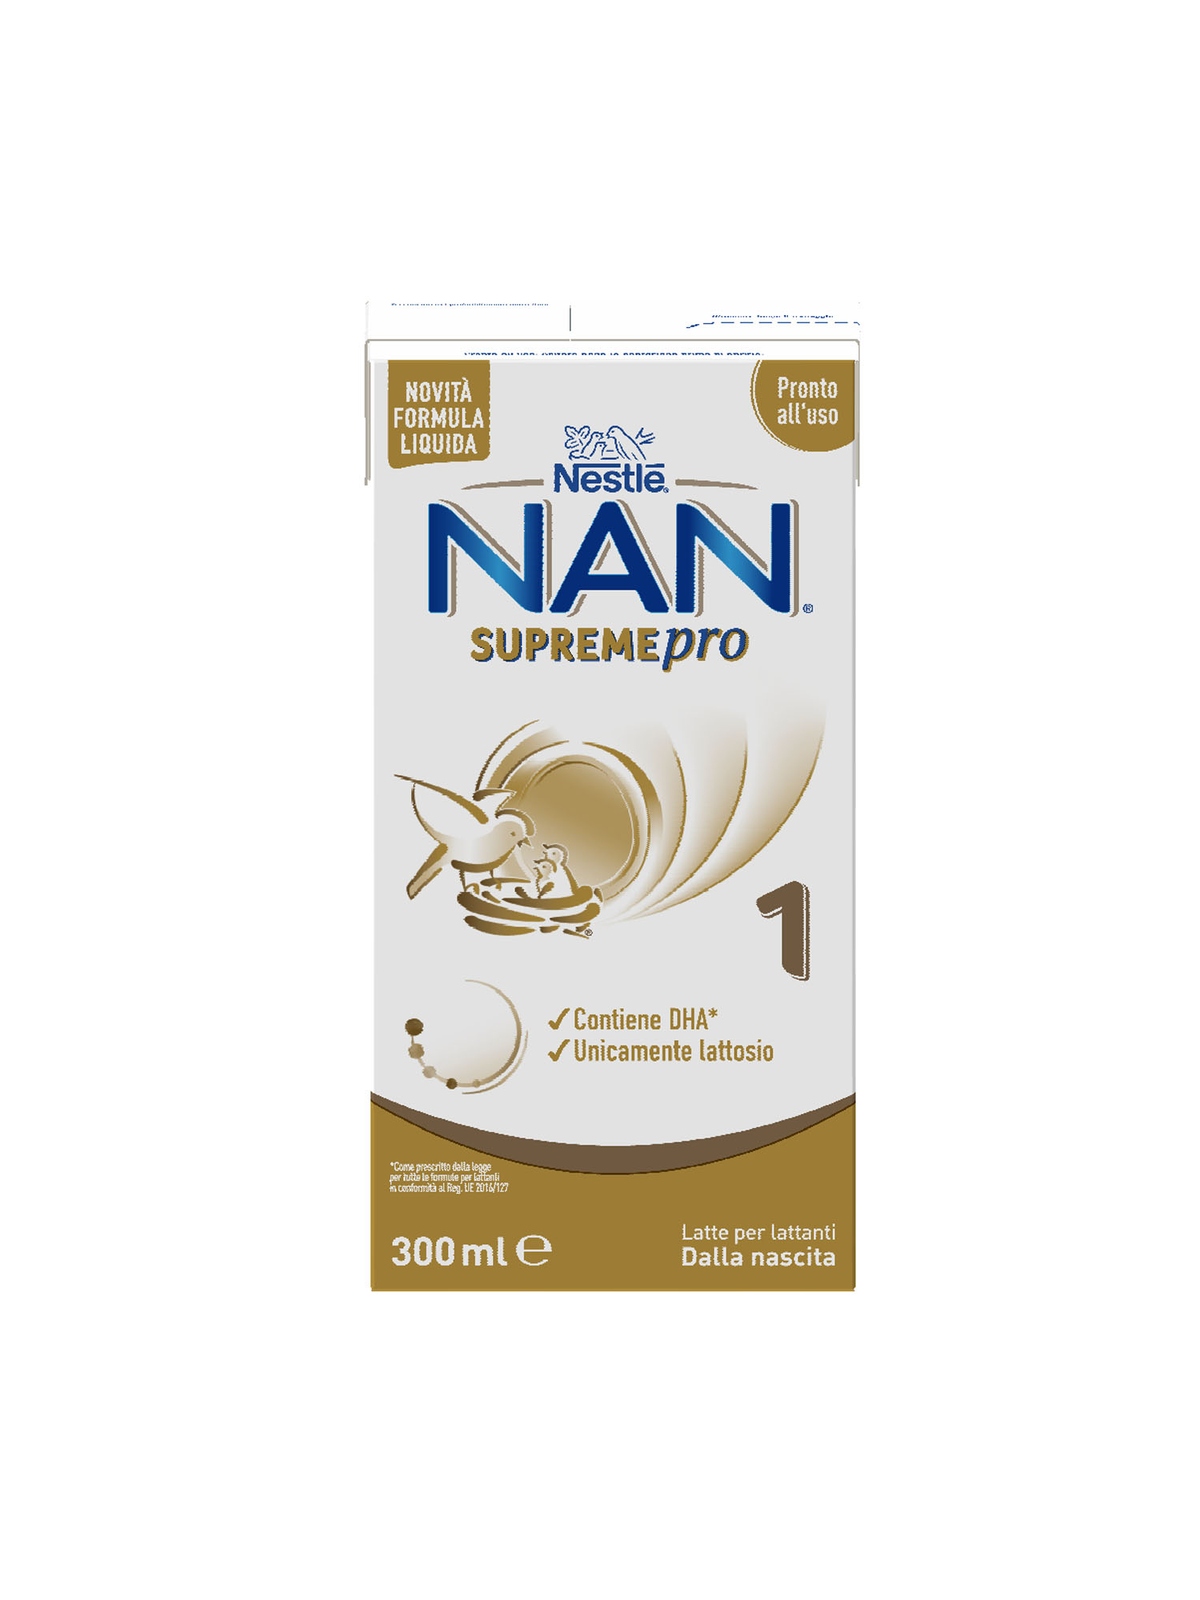 Nan supremepro 1 liquido, dalla nascita. latte per lattanti in formato liquido, brick da 300ml - Nestlé Nan